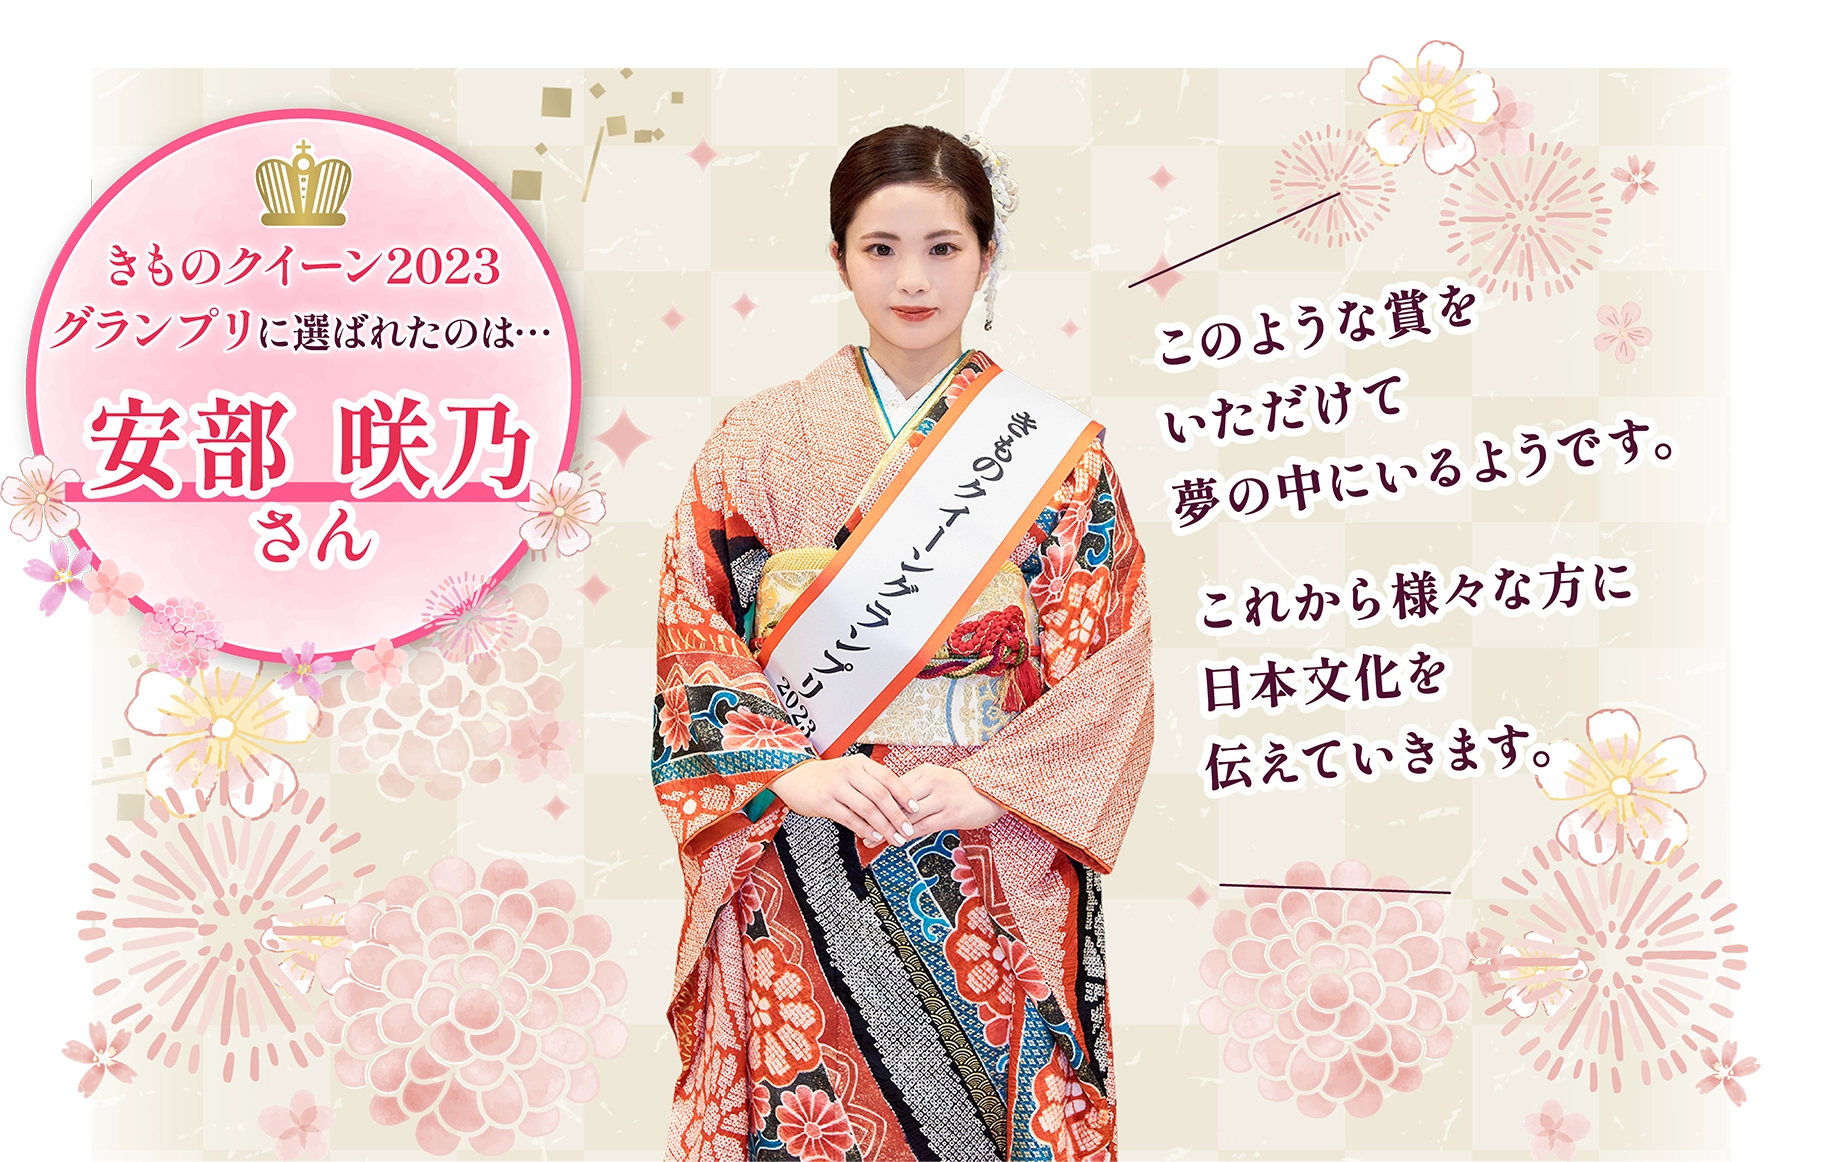 きものクイーン2023グランプリ 安部 咲乃さん：このような賞をいただけて夢の中にいるようです。これから様々な方に日本文化を伝えていきます。